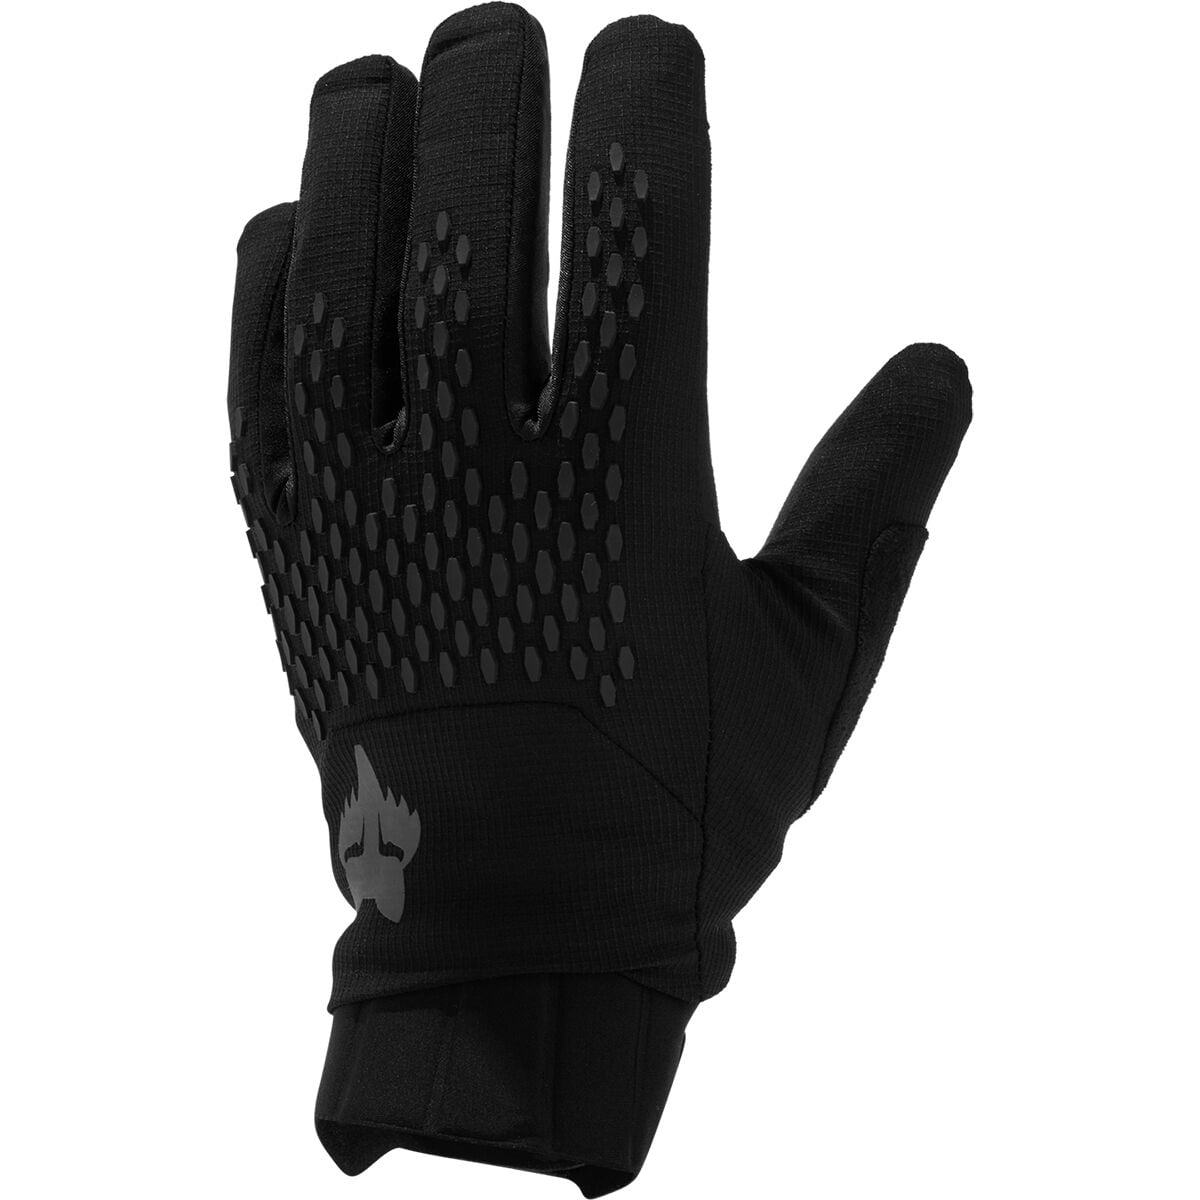 Fox Racing Defend Pro Winter Glove - Men's